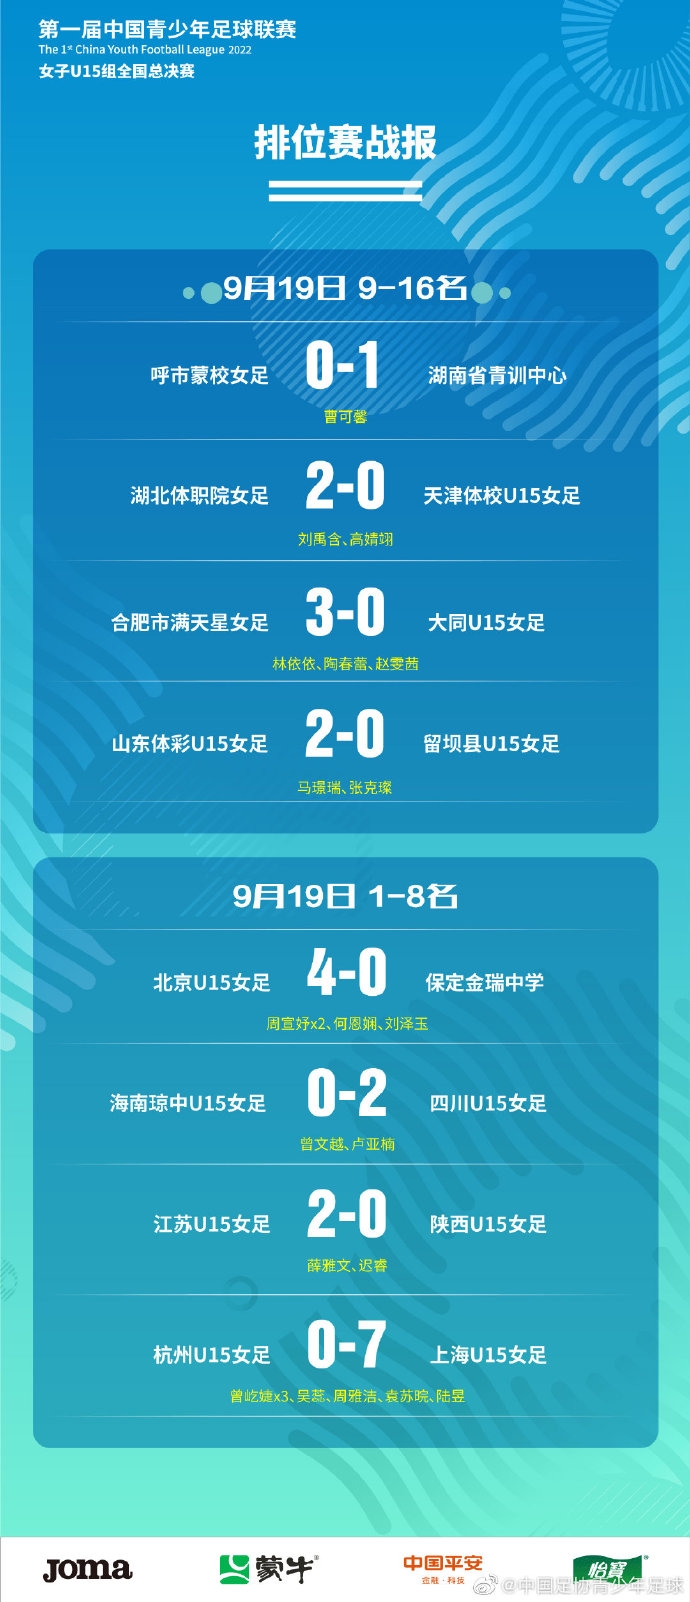 中国青少年足球联赛（女子初中年龄段U15组）全国总决赛四强出炉